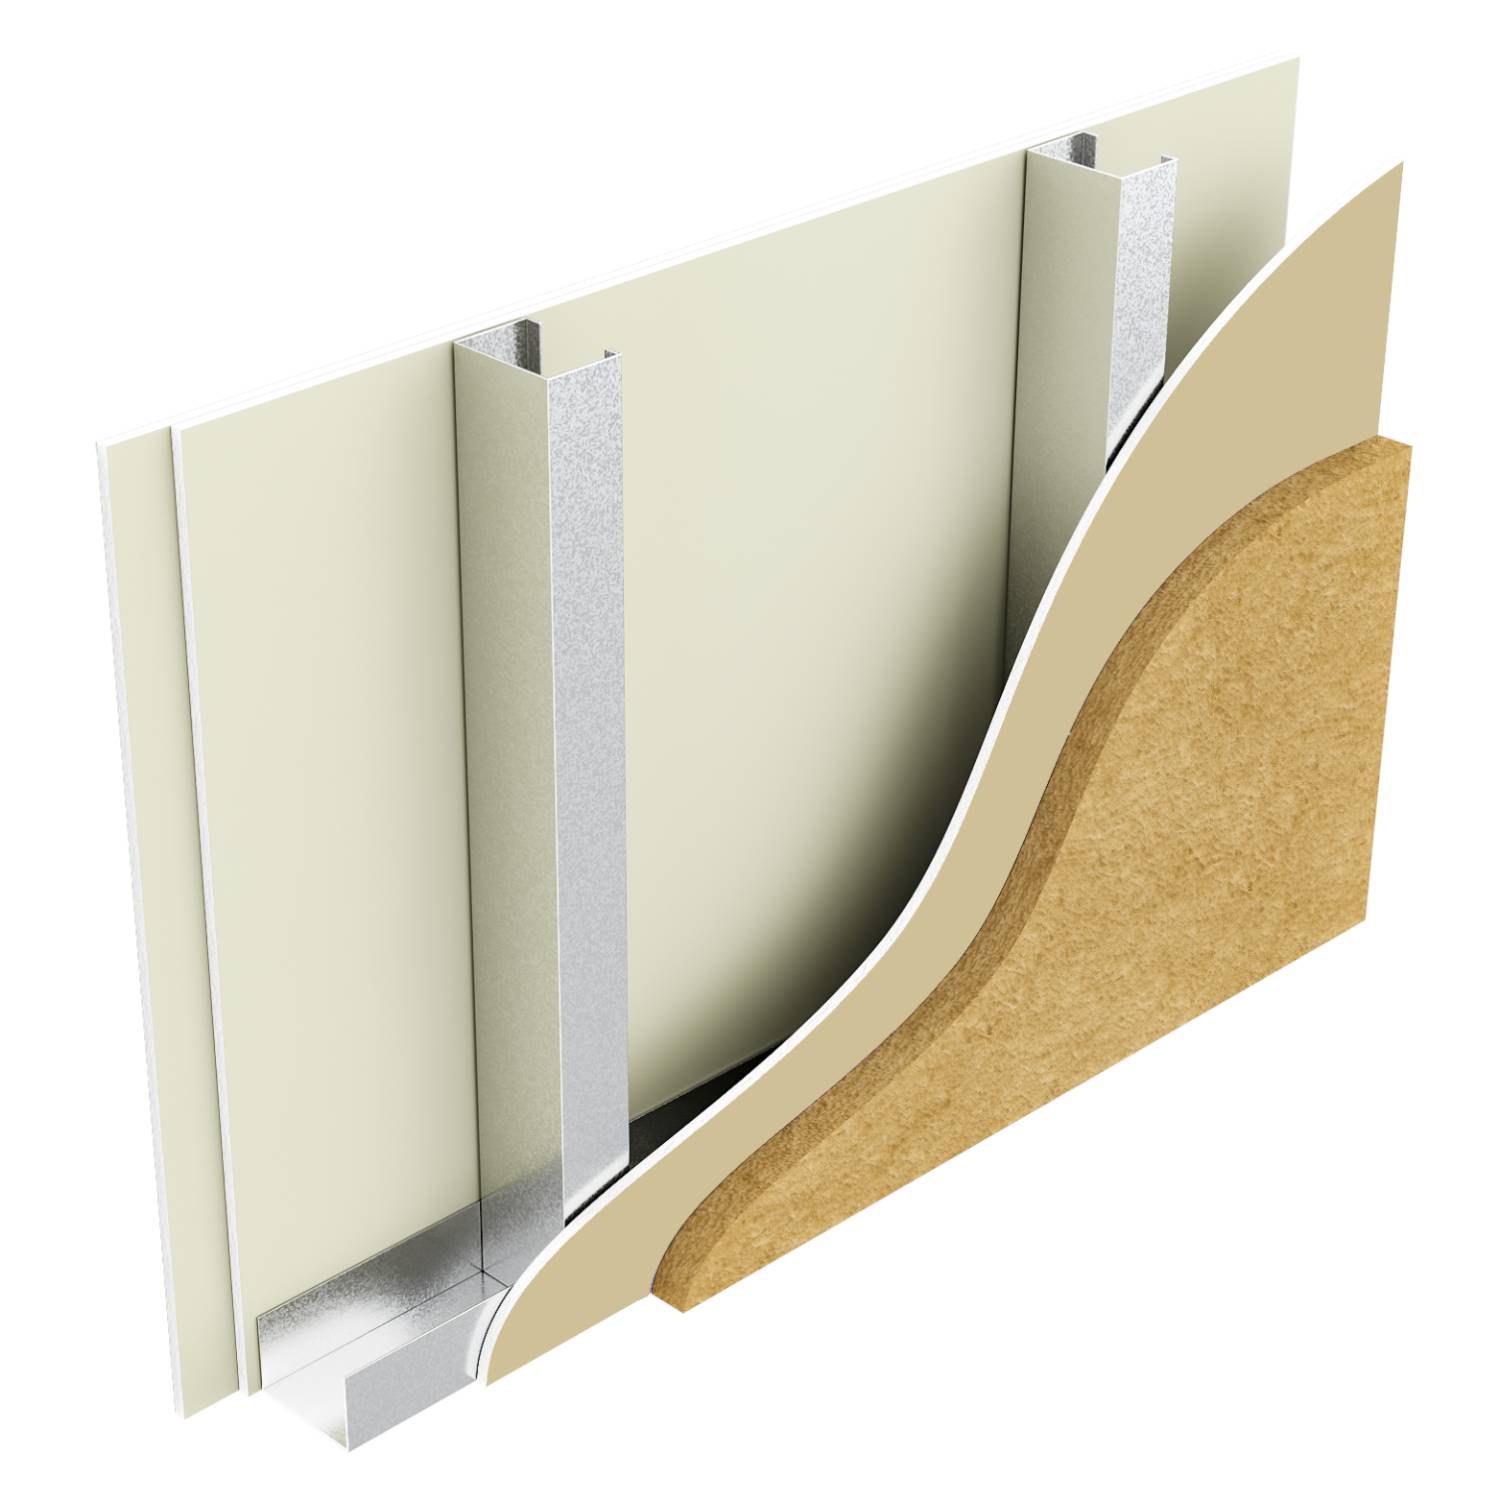 Metsec SFS Infill Wall with Y-Wall Sheathing Board, 12.5 mm Knauf Internal Boards, Rockwool Duo Slab Insulation, Fire performance 120 min